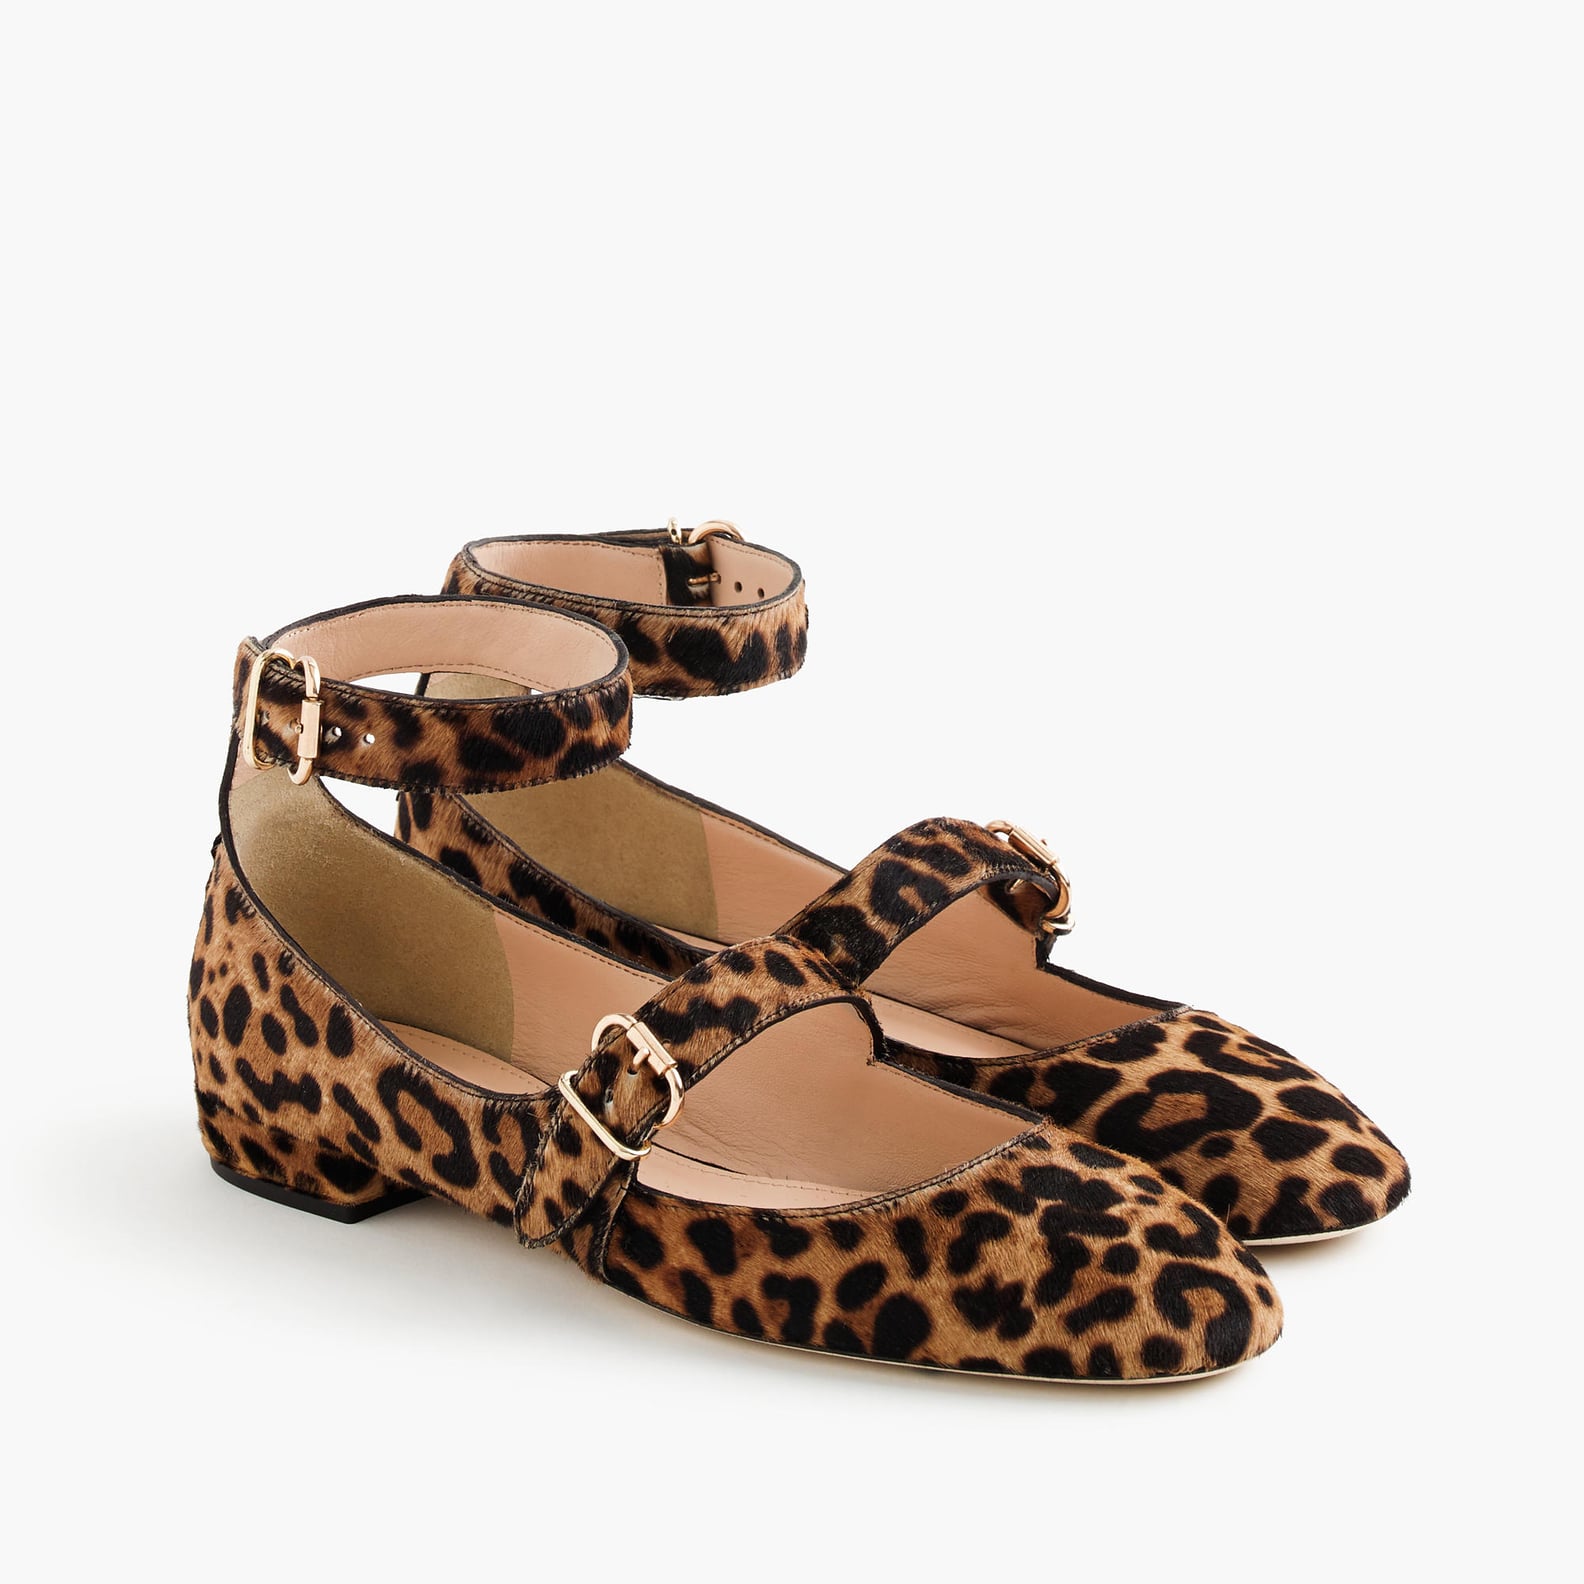 Leopard Clothing For Fall | POPSUGAR Fashion